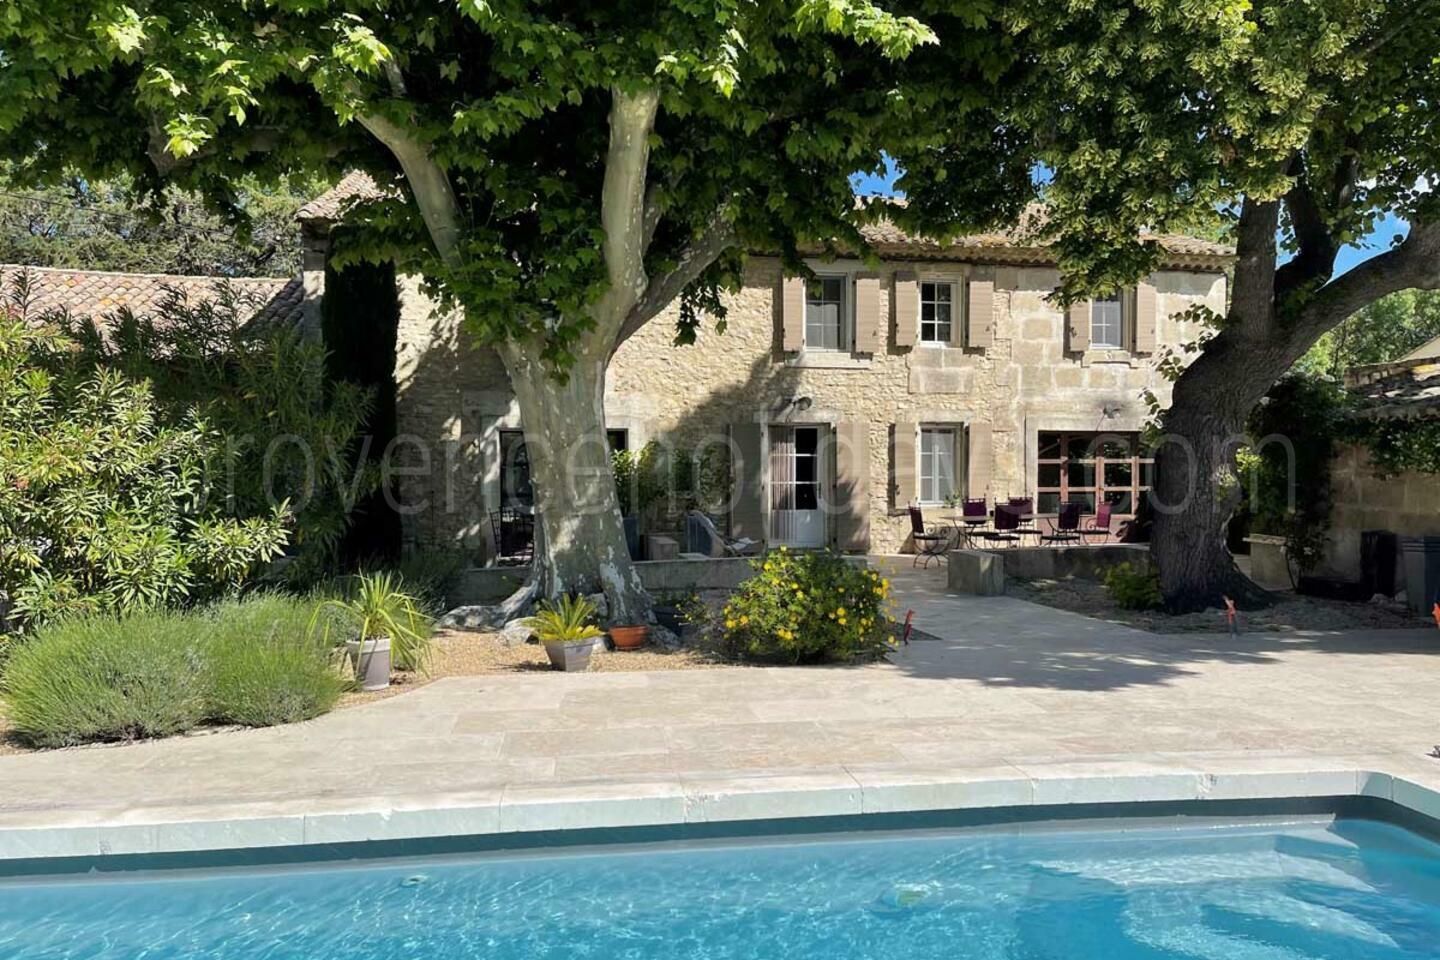 Location de vacances avec climatisation près de Saint-Étienne-du-Grès 1 - Mas Vigueirat: Villa: Pool